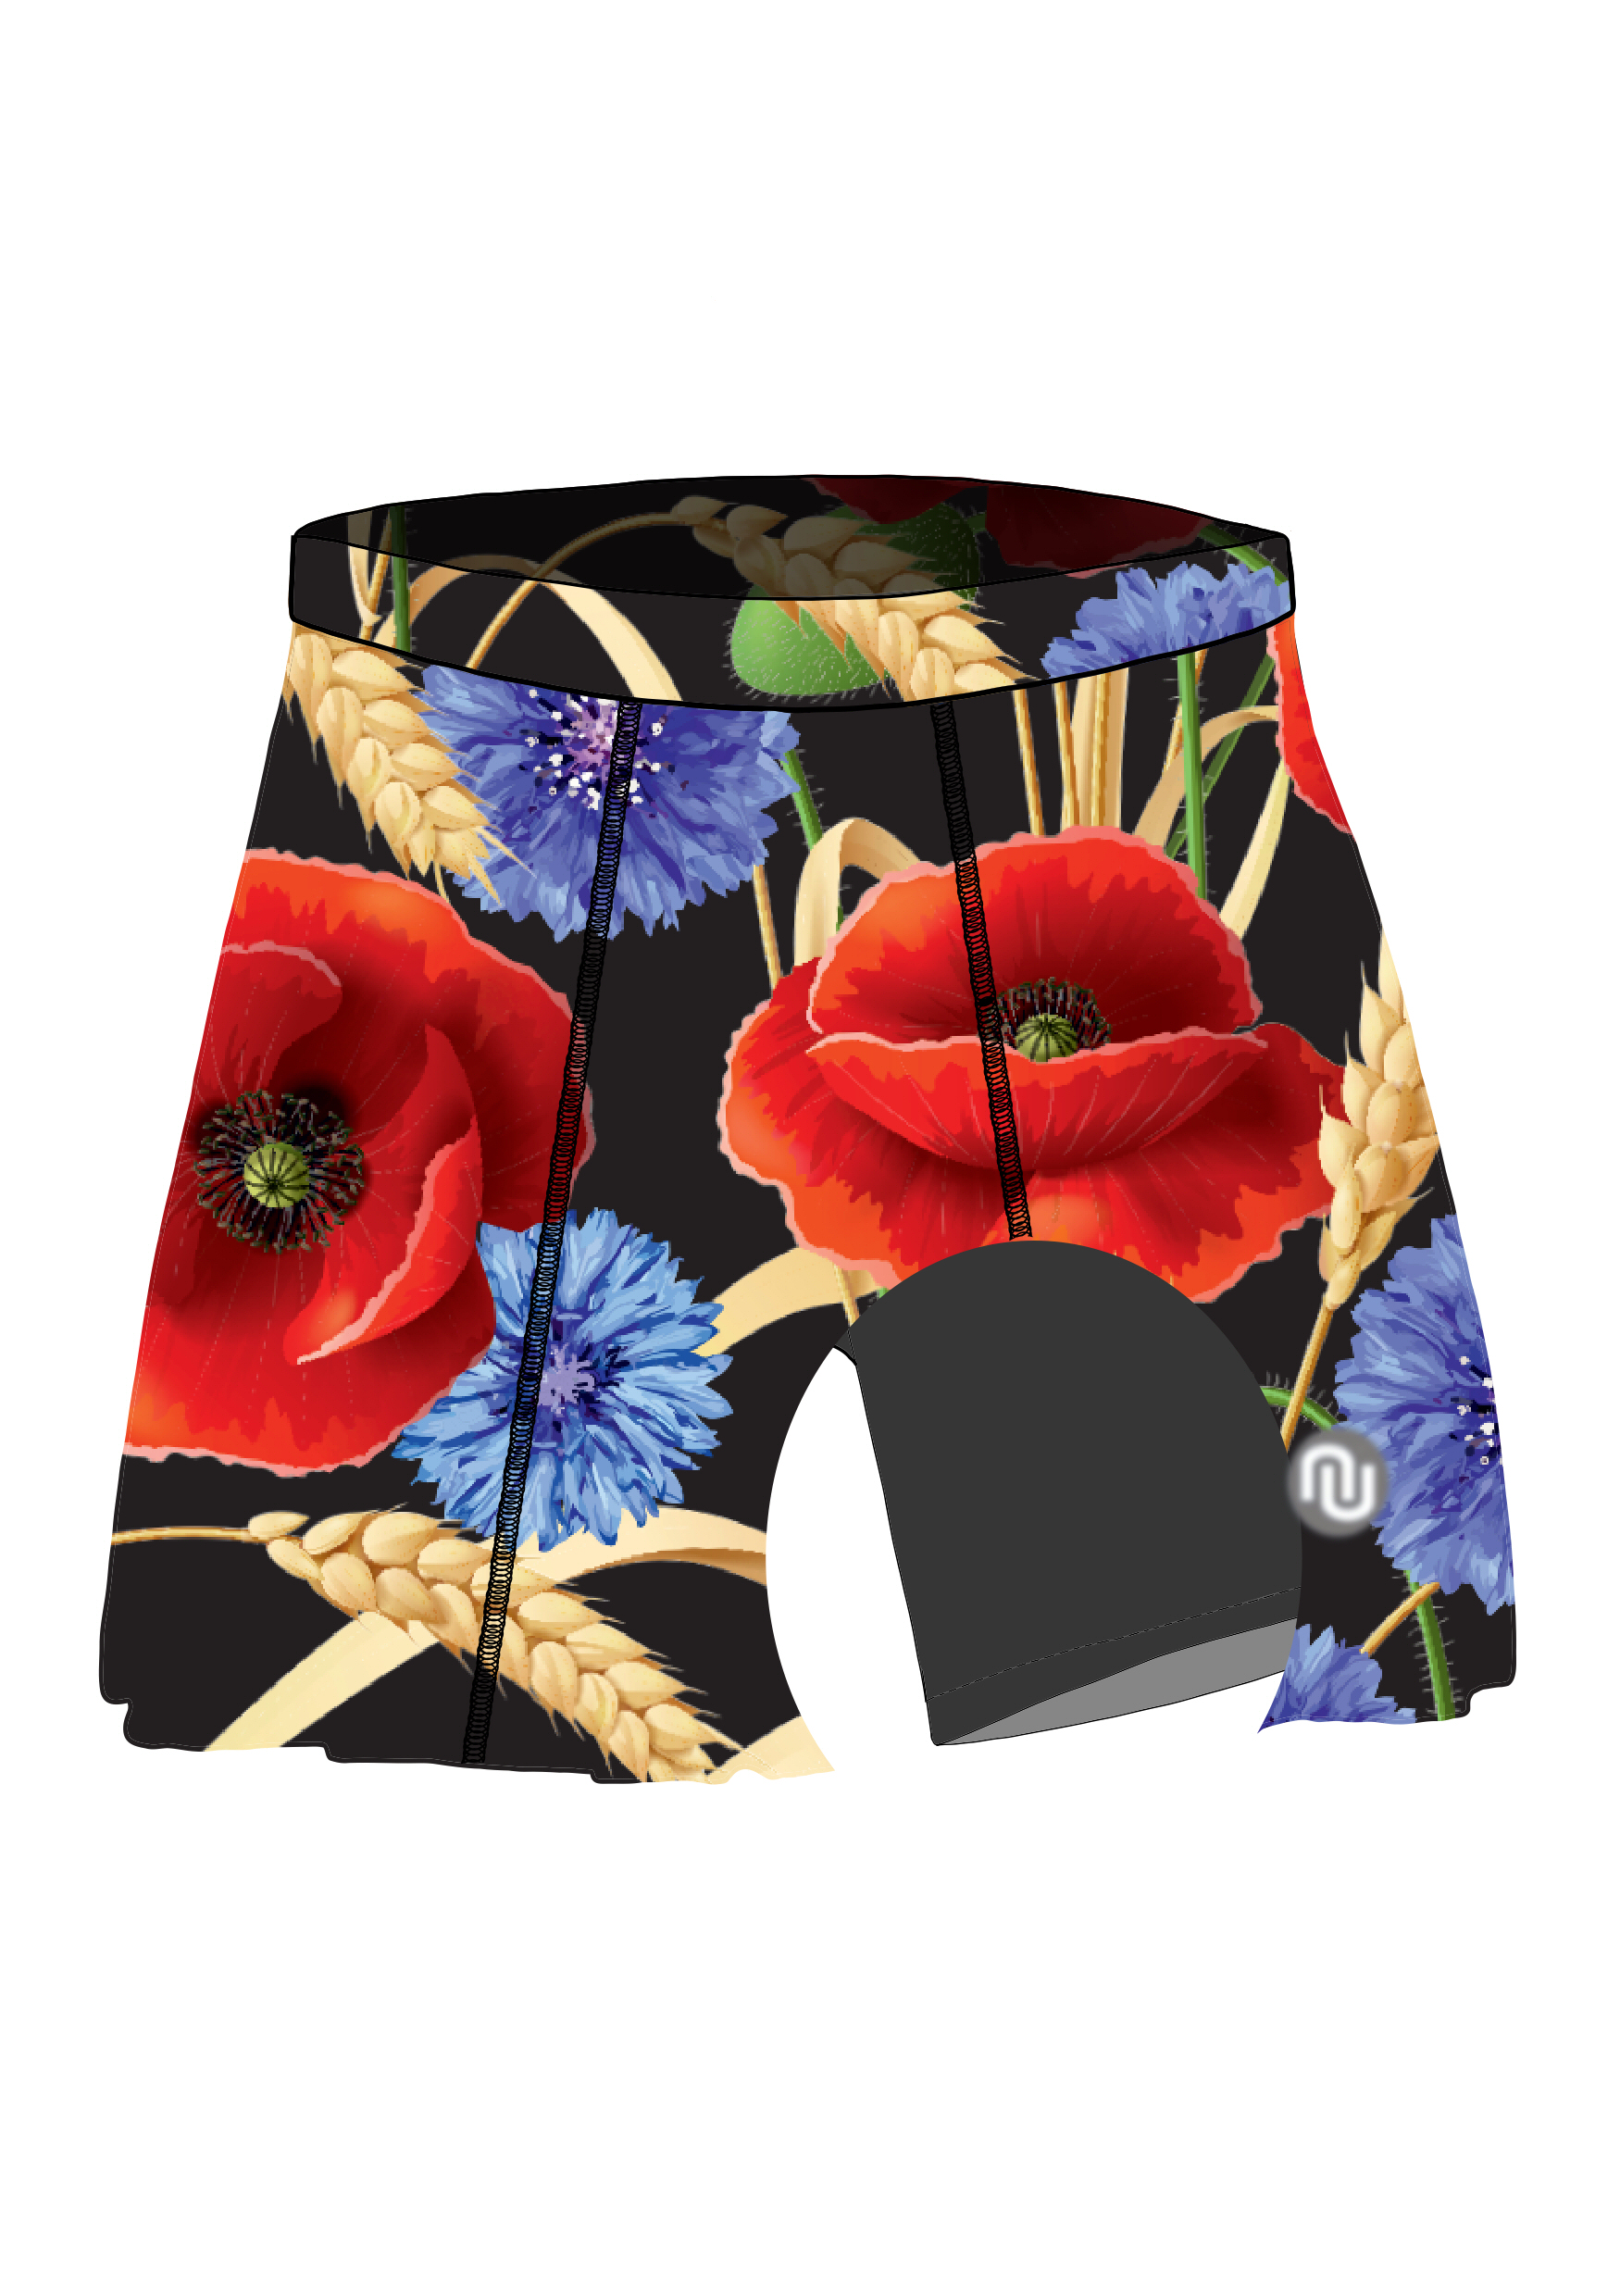 Running skirt with leggings Cornflowers and Poppies - Nessi Sportswear